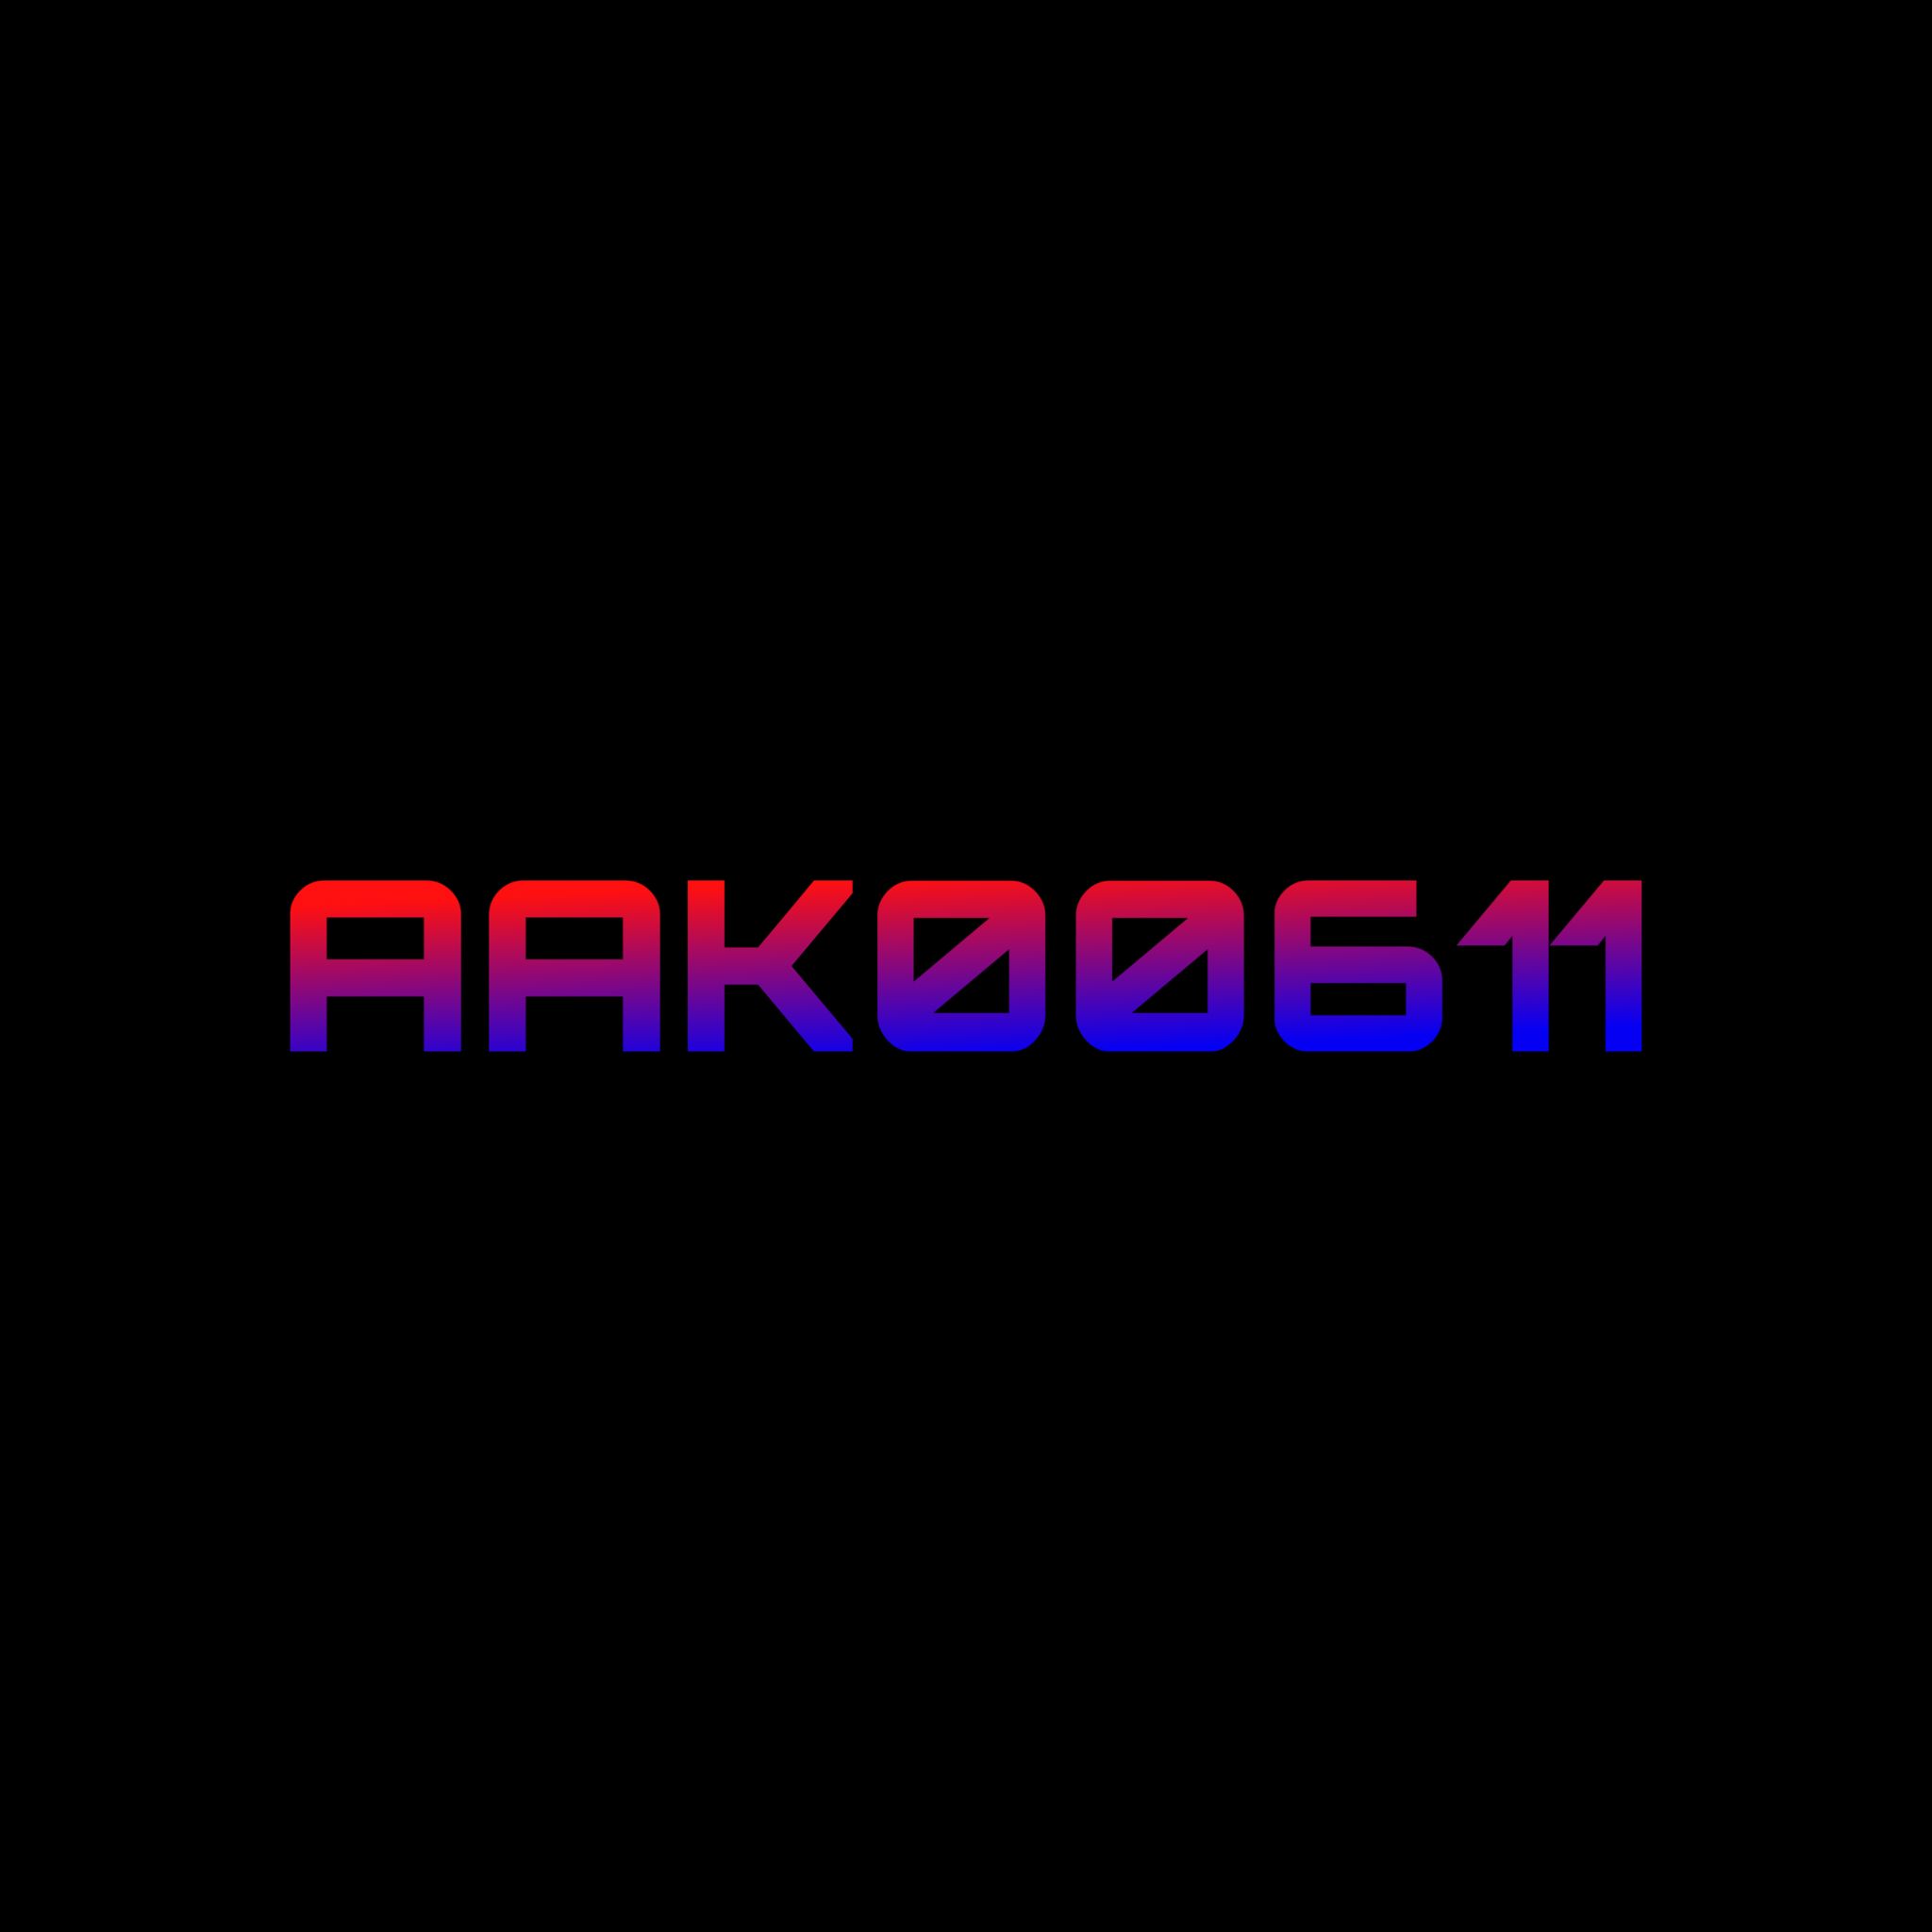 AAK00611